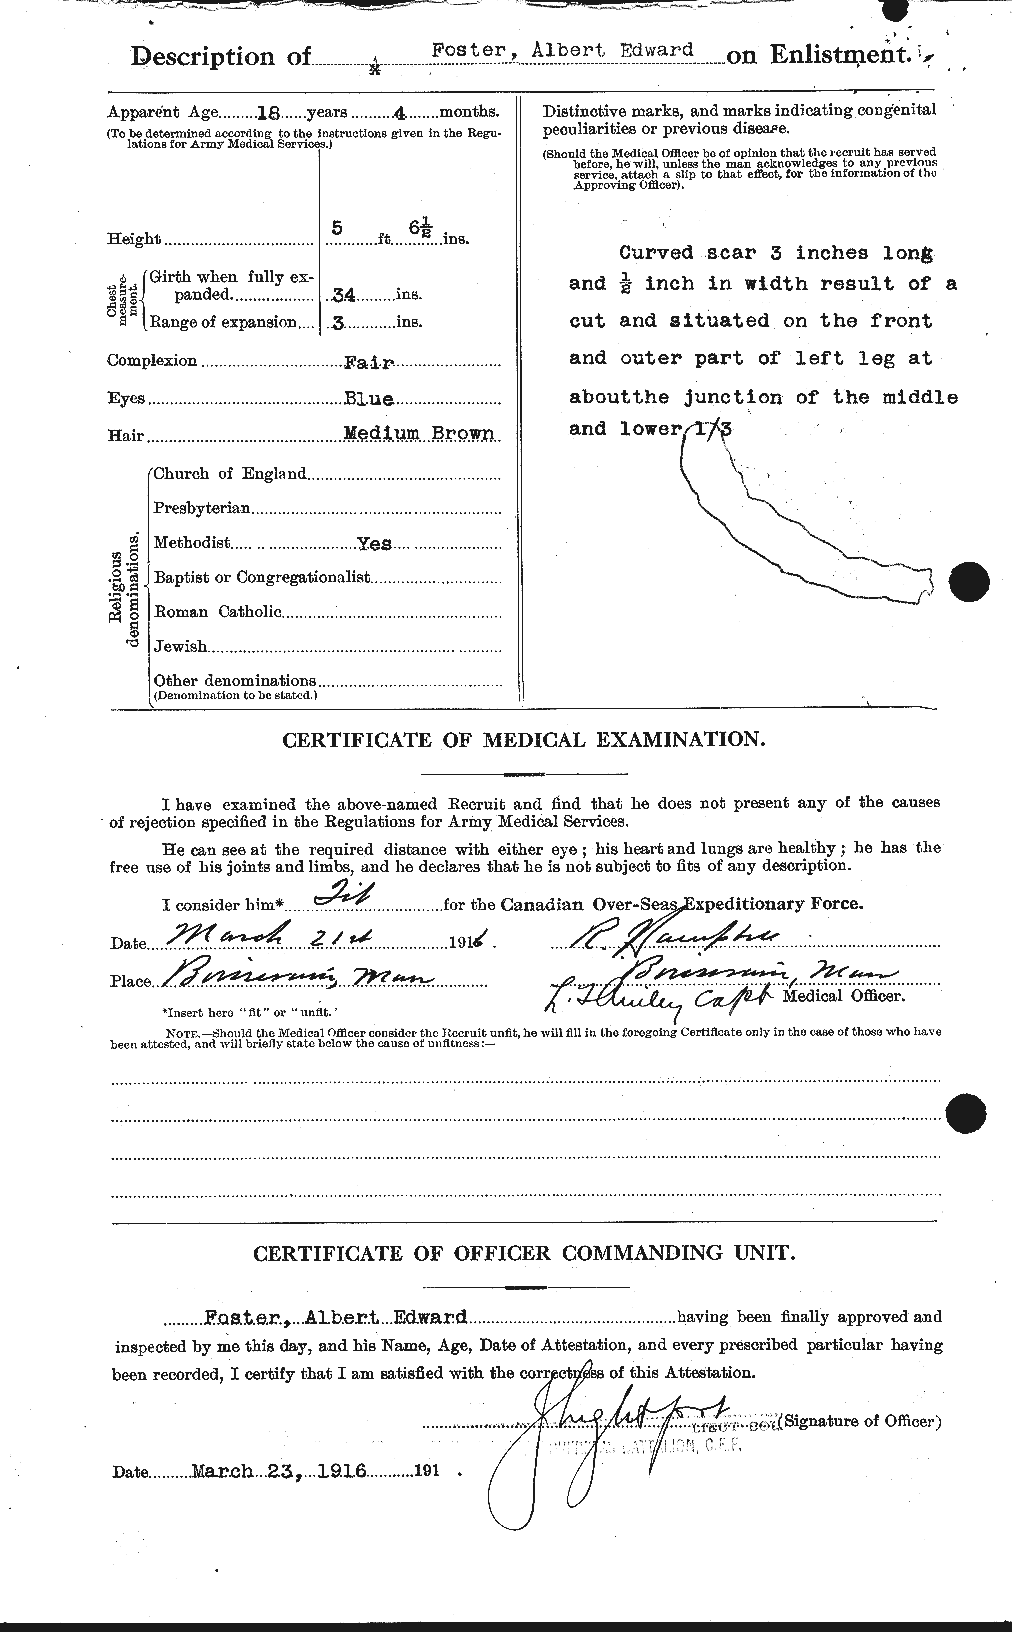 Dossiers du Personnel de la Première Guerre mondiale - CEC 330435b